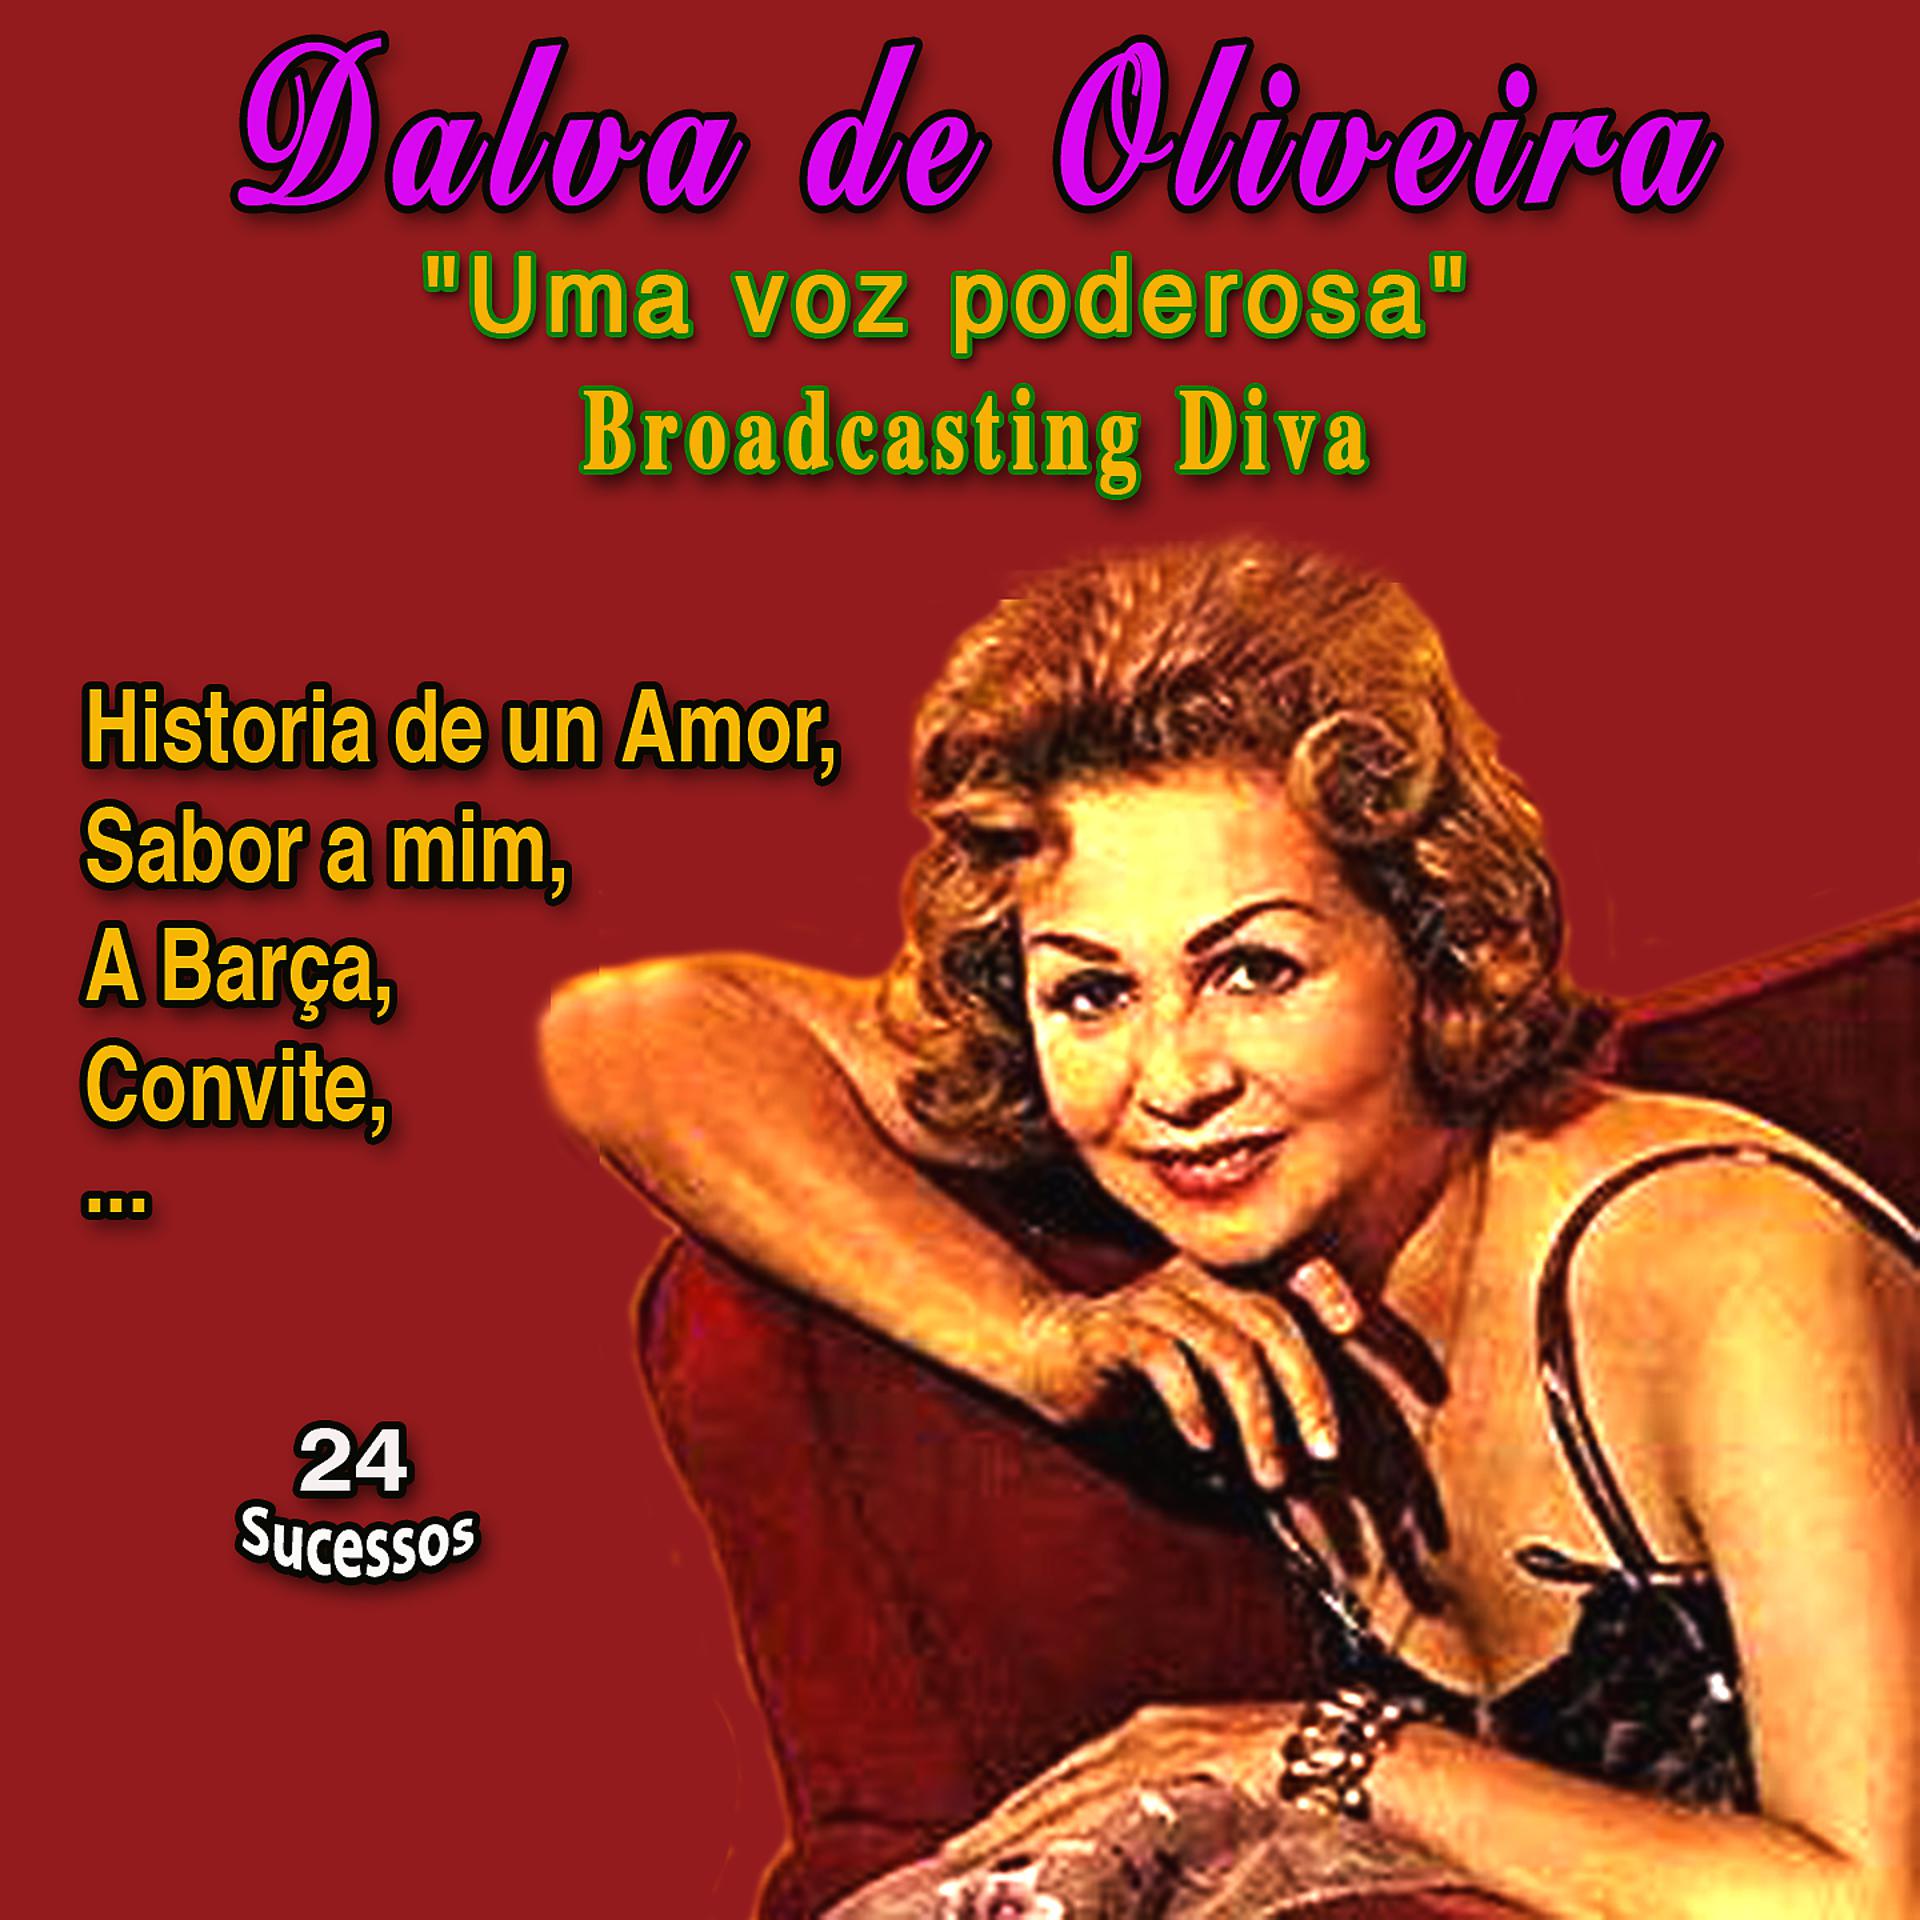 Постер альбома "One of Divas of the Radio Era" Dalva de Oliveira